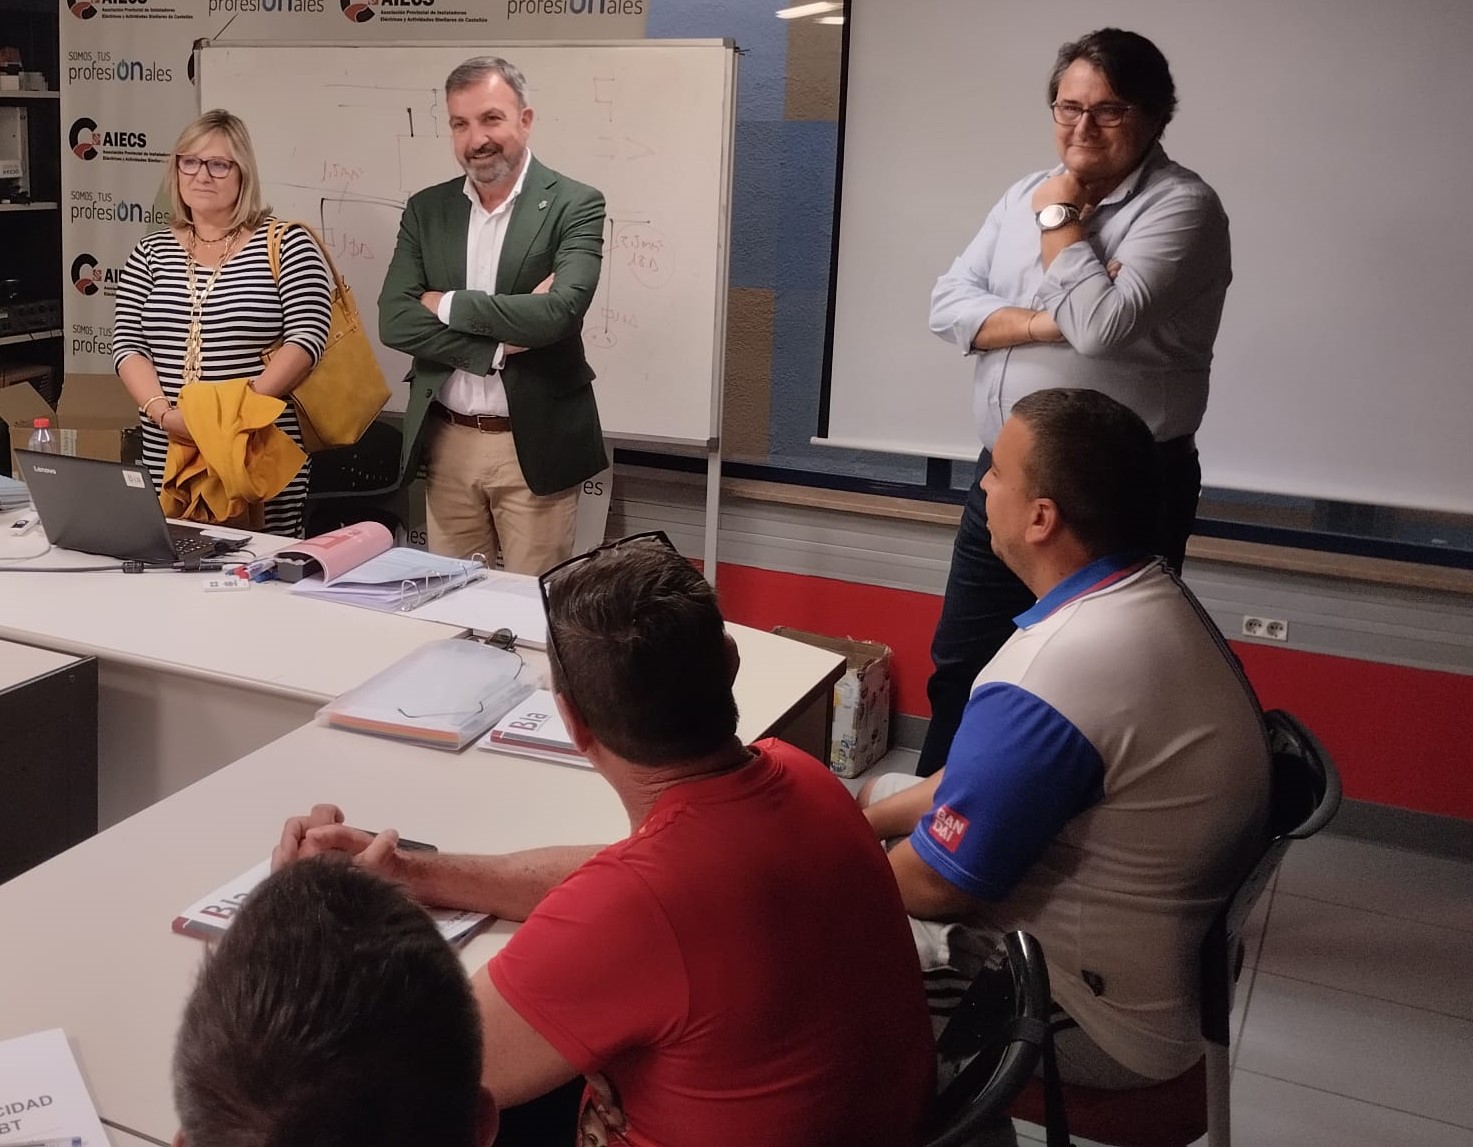 Castelló posa en marxa un nou curs de la seua “Formació a la Carta” de la mà de l'Associació d'Instal·ladors Elèctrics AIECS obrint la inserció laboral d’altres 15 persones